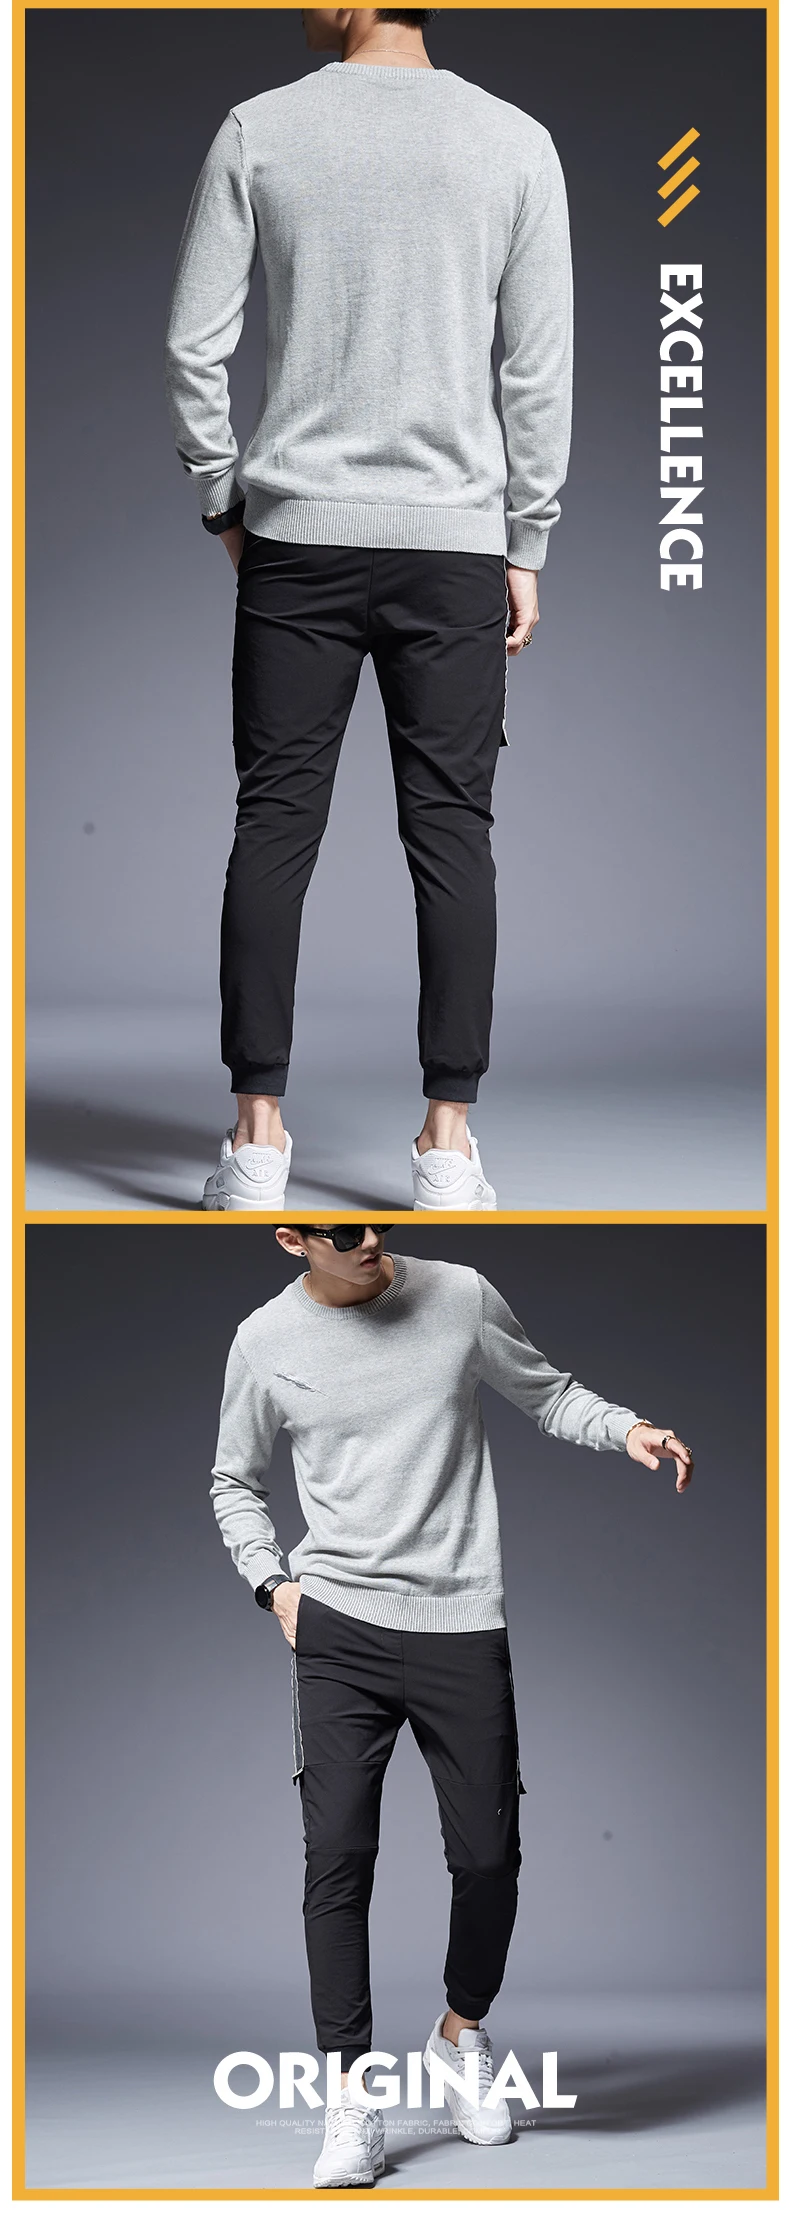 2019 новый модный бренд Свитера мужские s пуловер Патч Работа Slim Fit Джемперы Вязание Теплый Осень корейский стиль повседневная одежда мужские